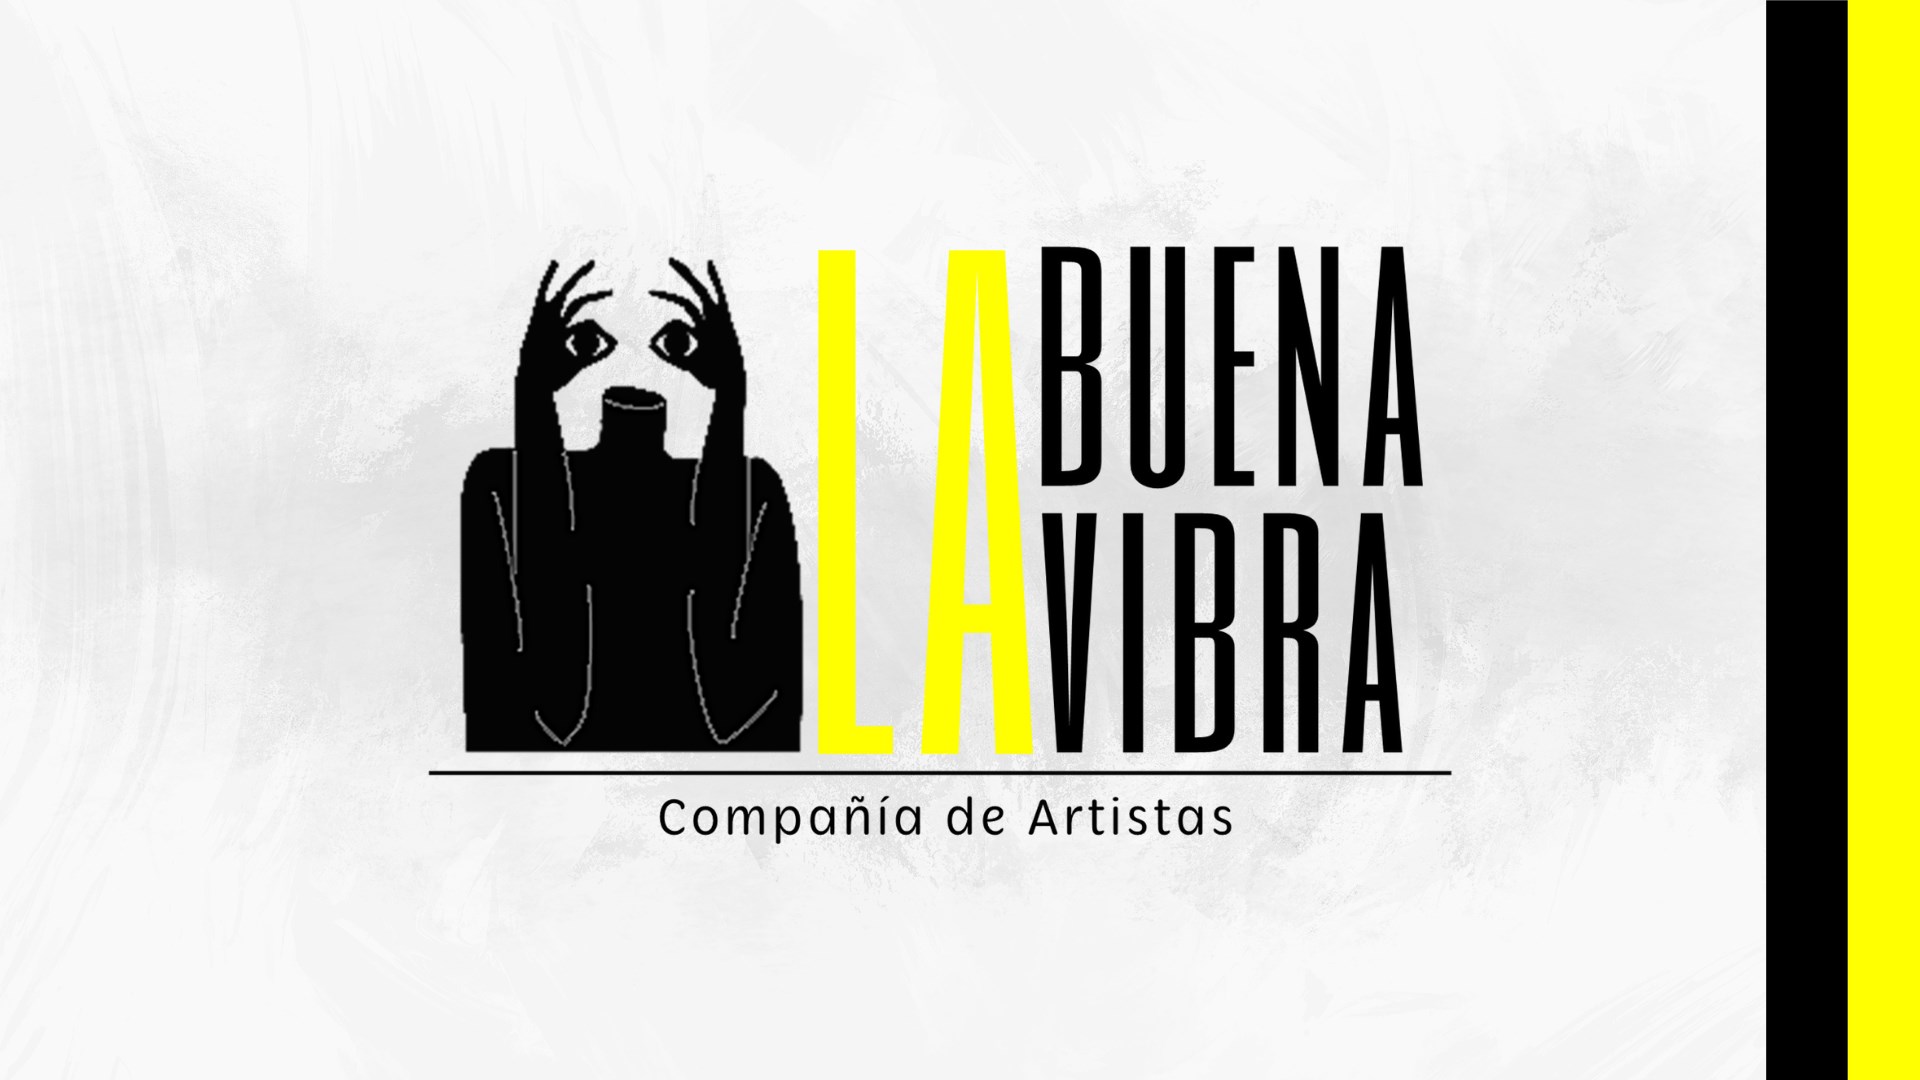 LA BUENA VIBRA, COMPAÑÍA DE ARTISTAS